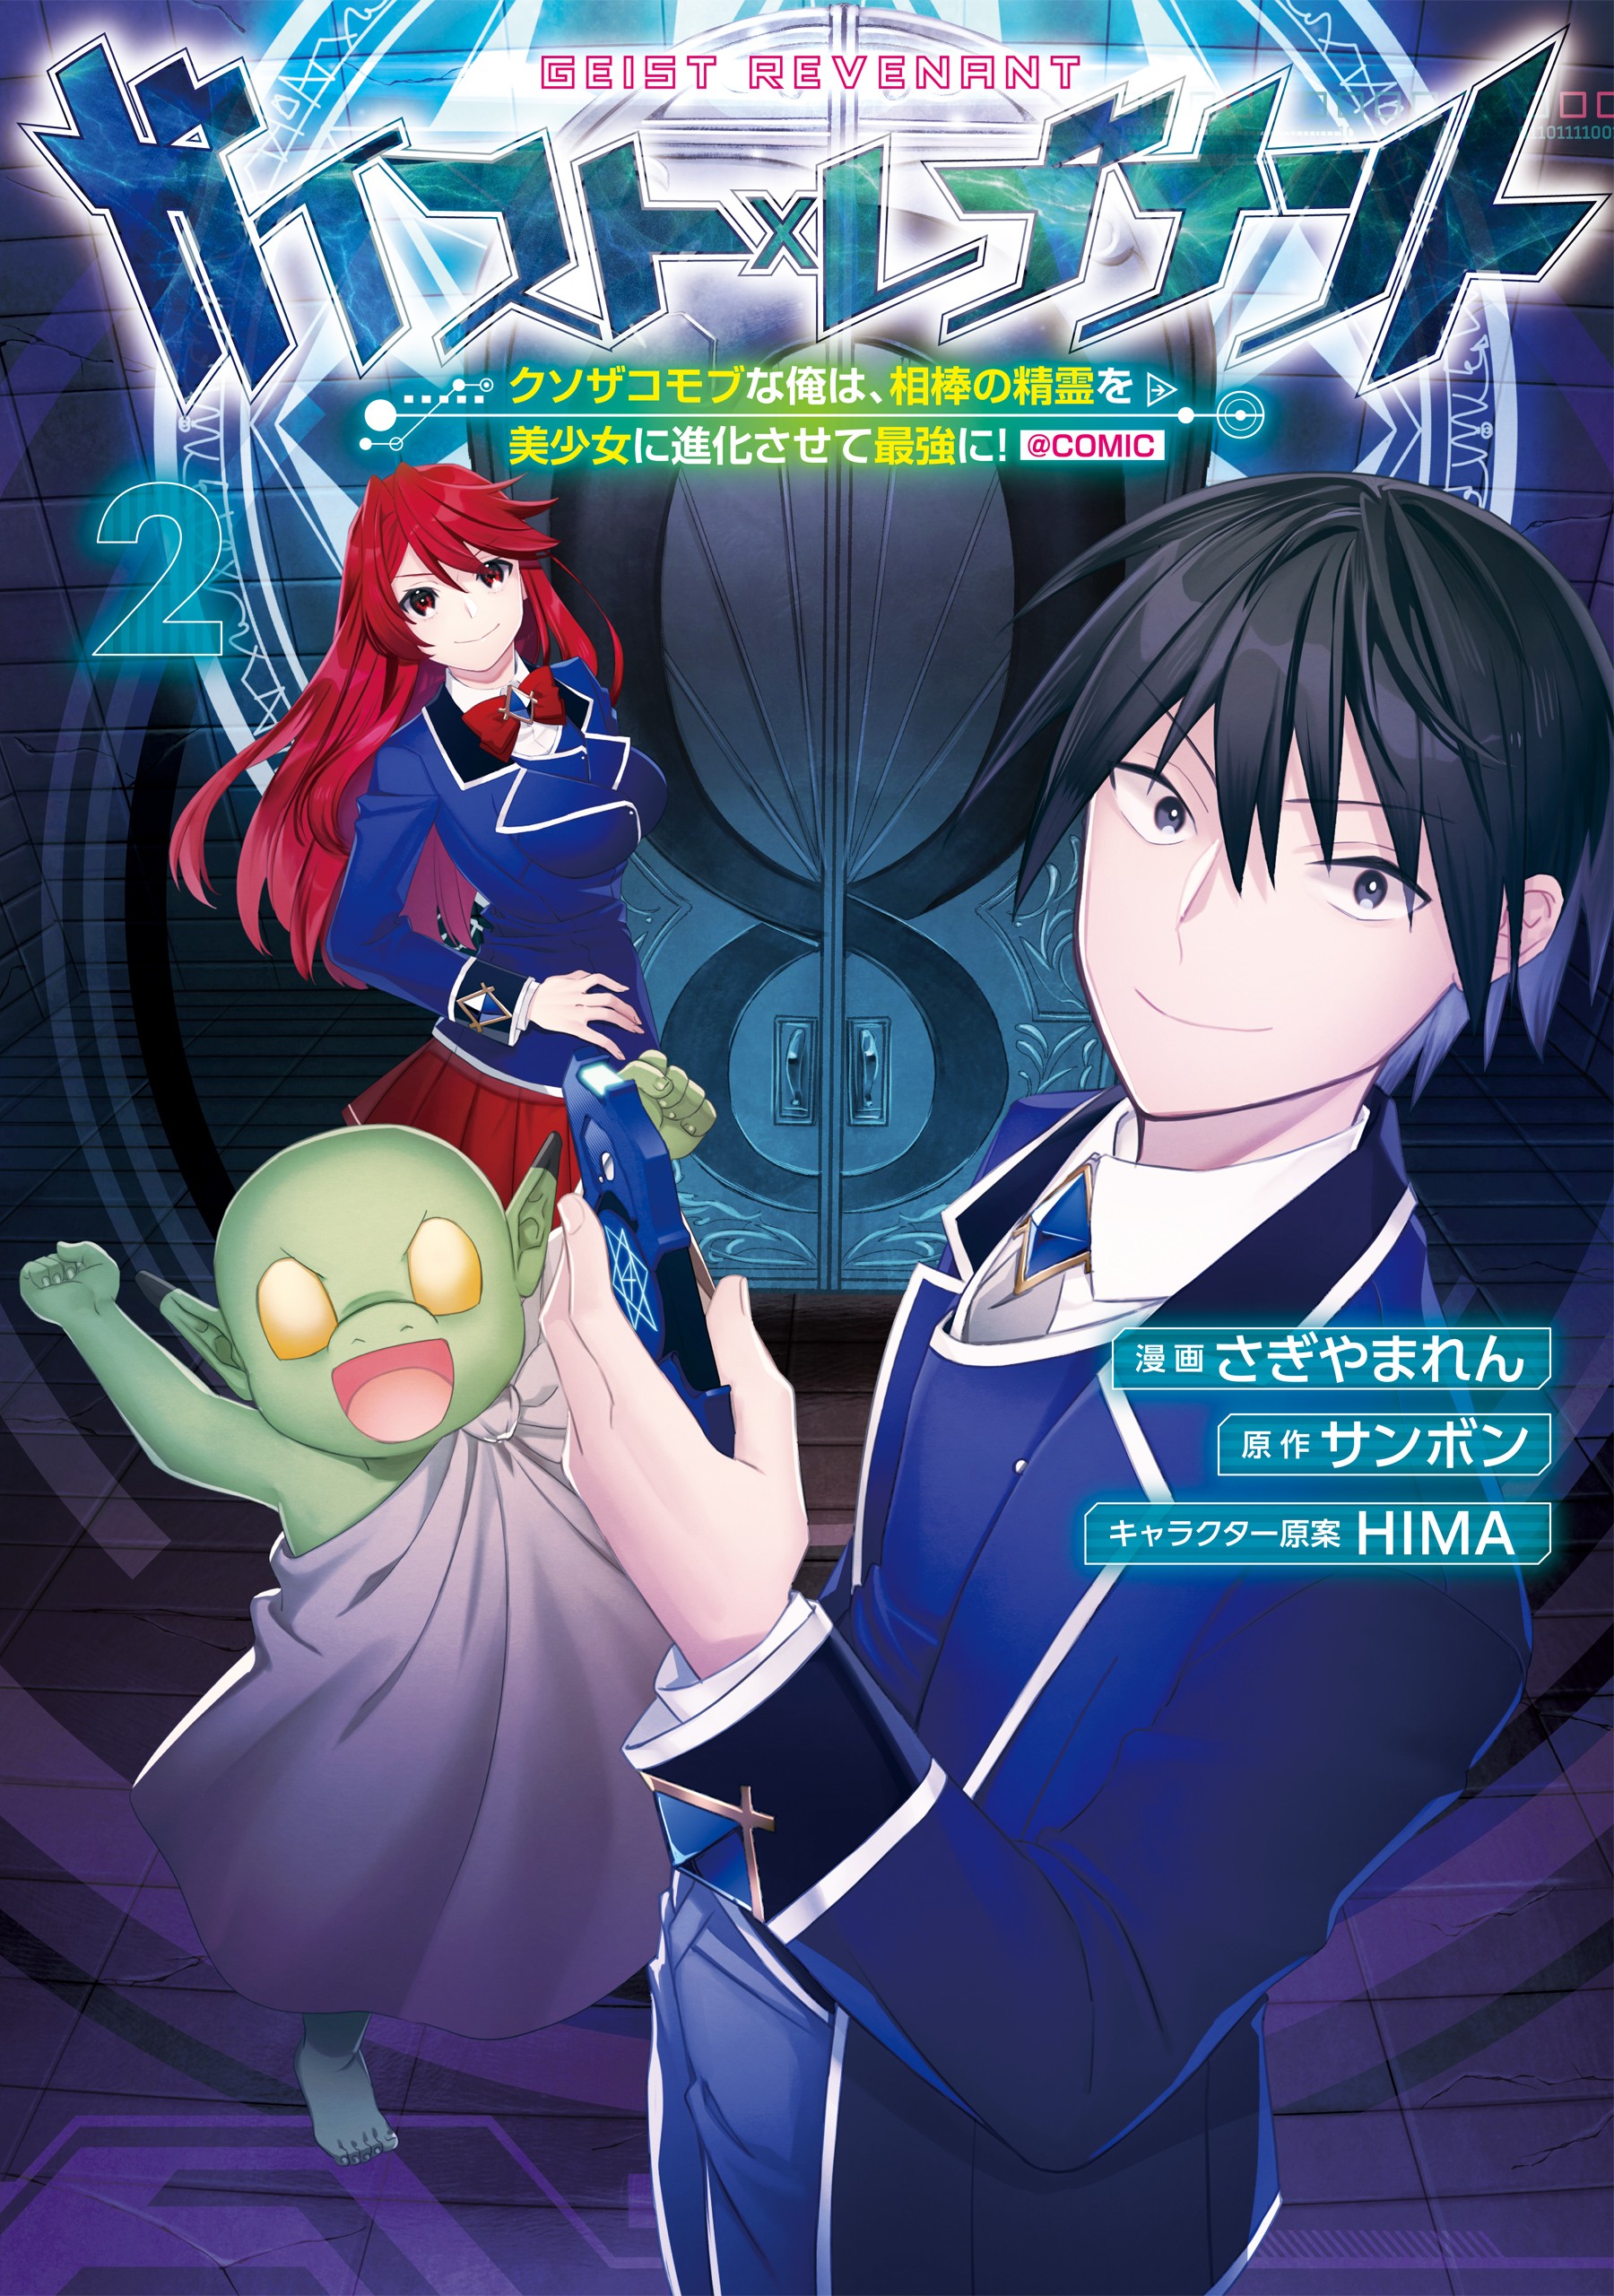 Manga Mogura RE on X: LN spin-off Isekai de Cheat Skill wo Te ni